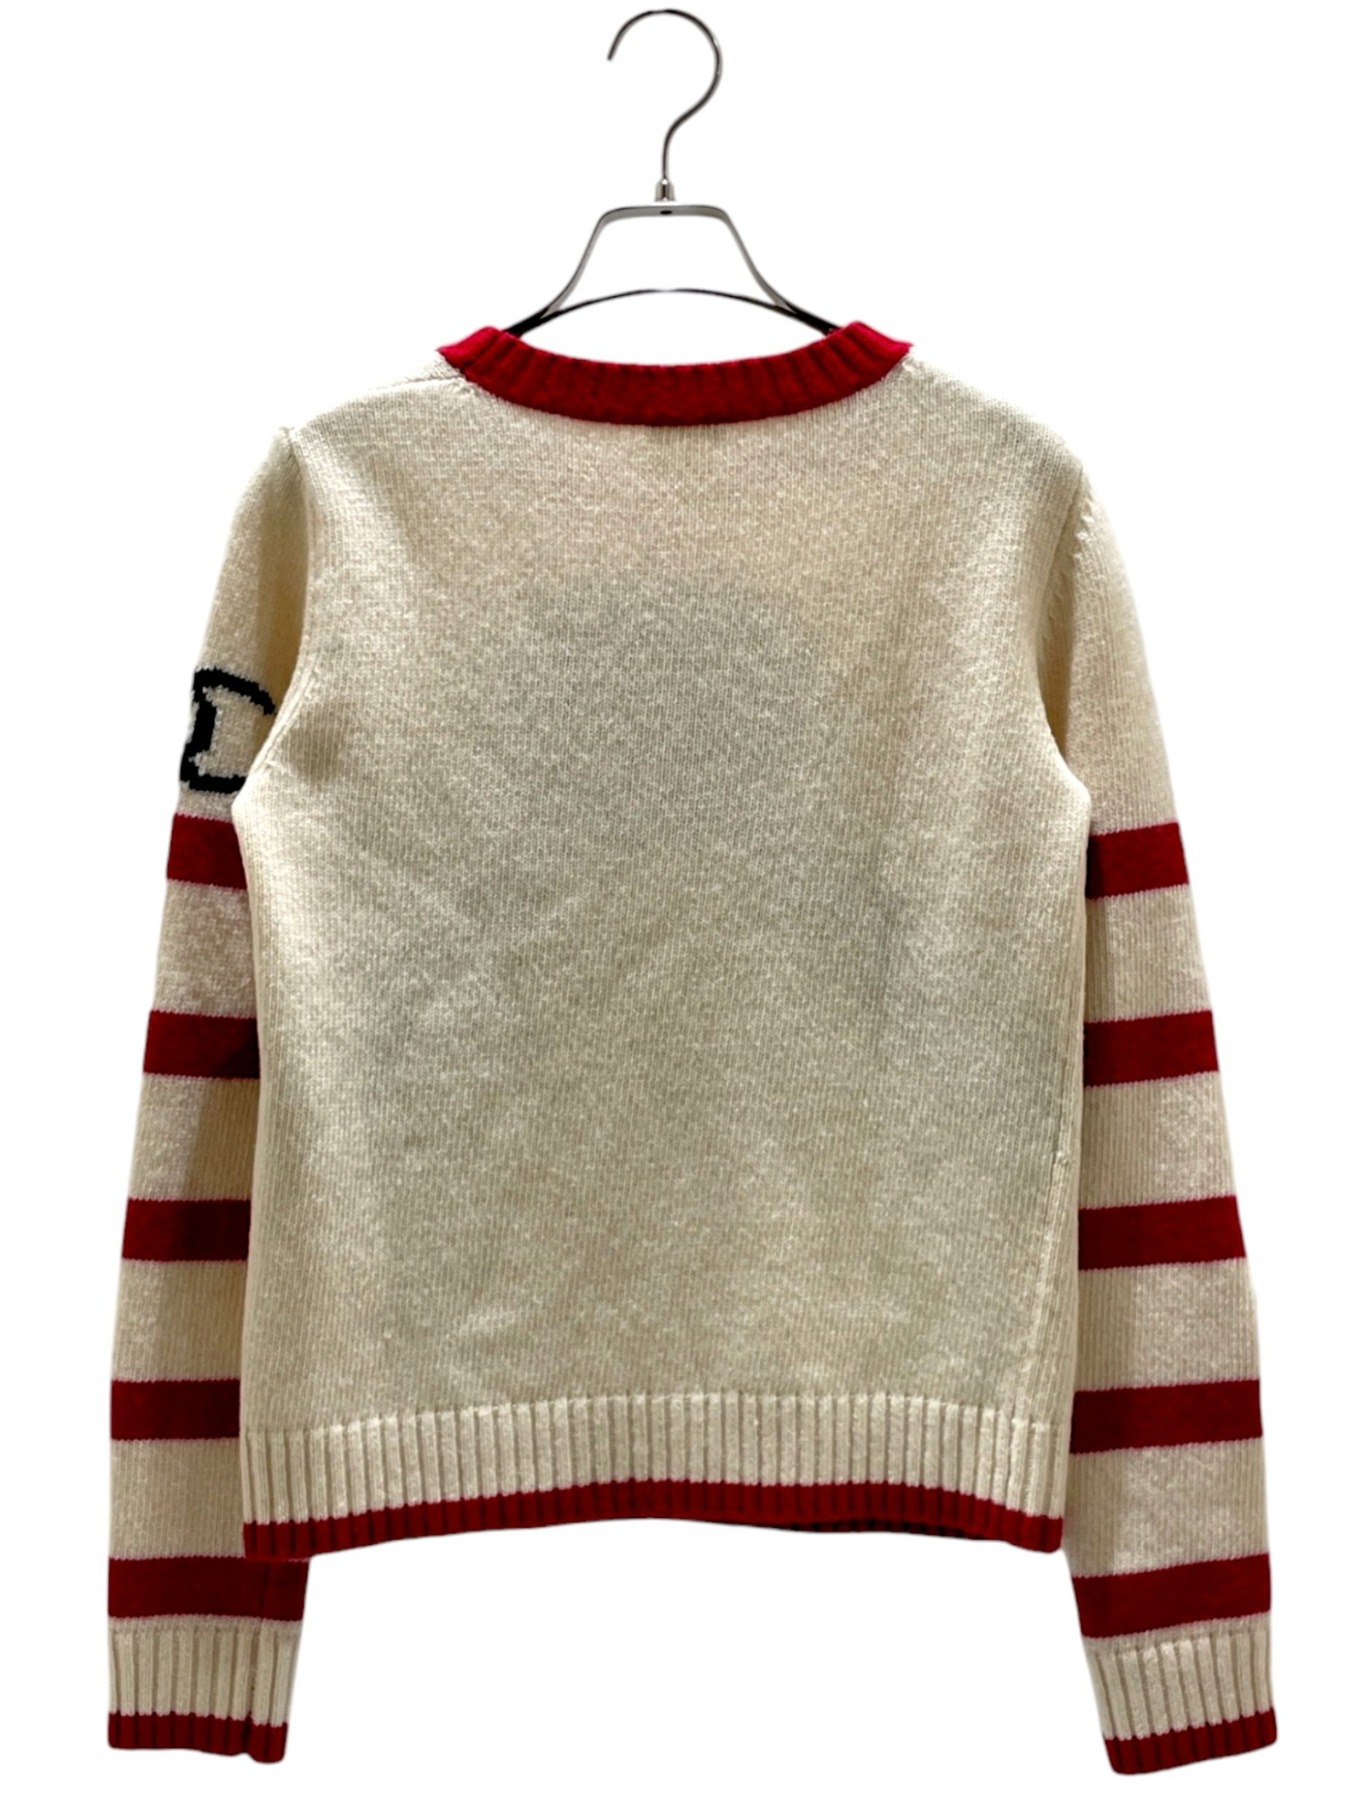 CHANEL (シャネル) penguin knit アイボリー×レッド サイズ:34